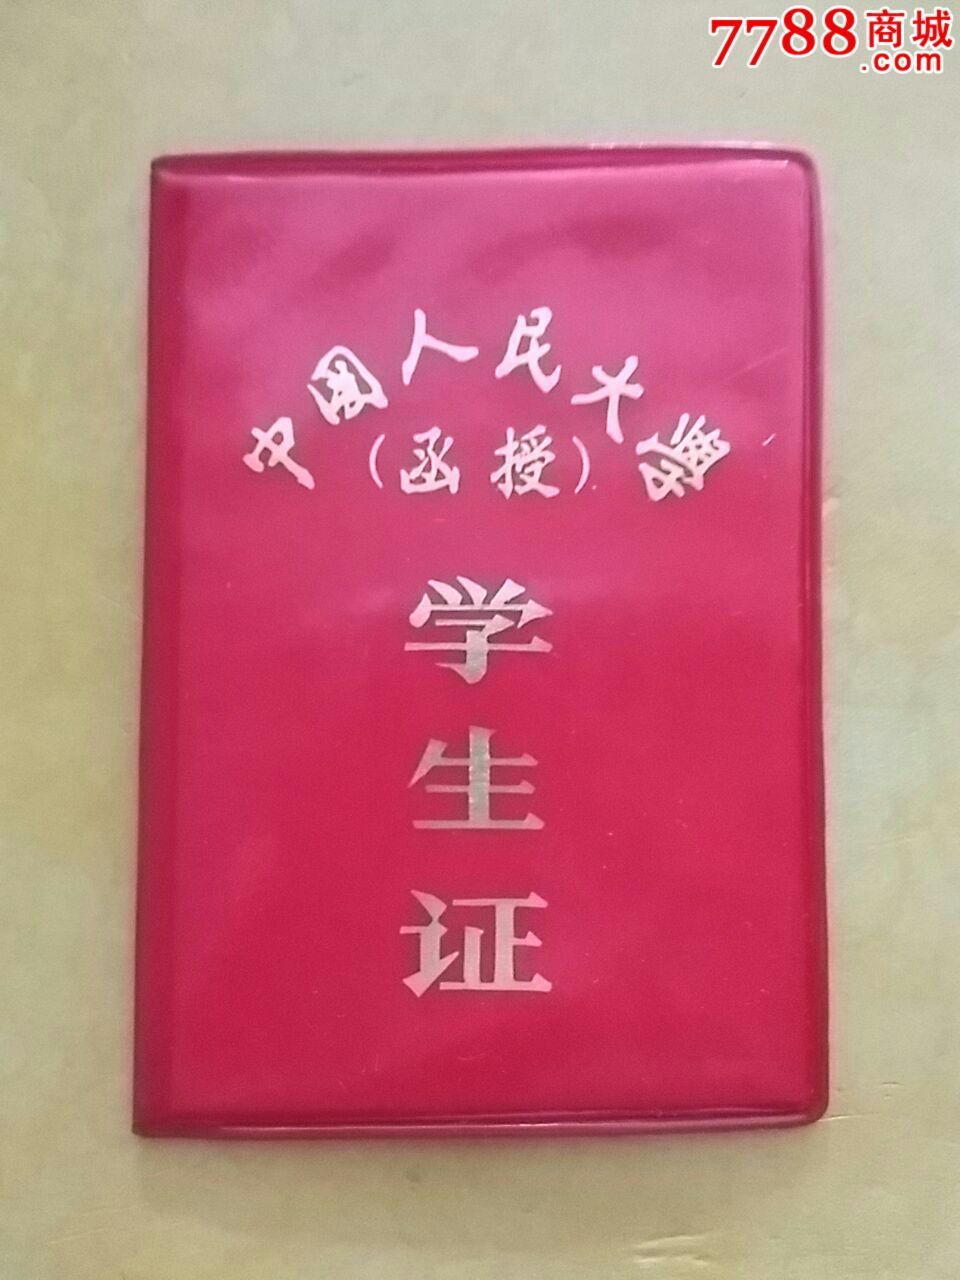 中国人民大学学生证(罕见80年代函授学生证)